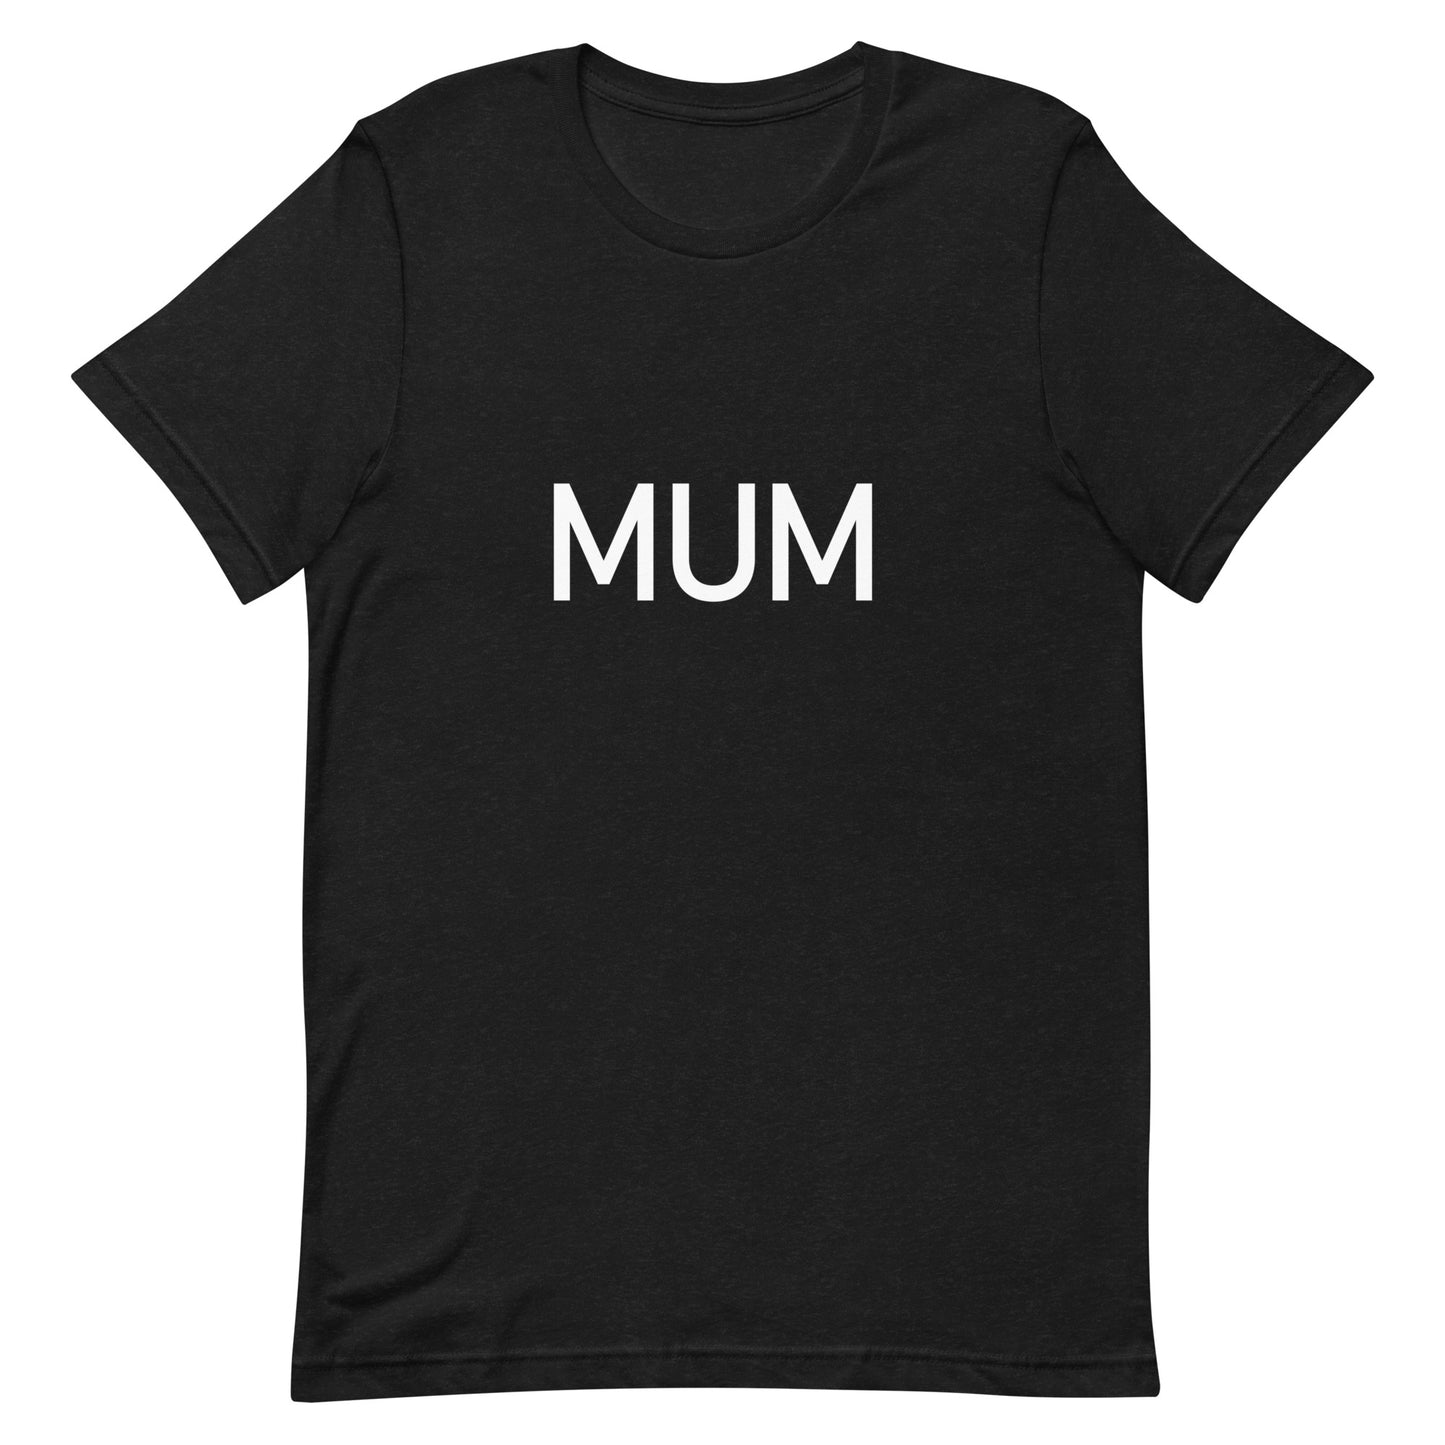 Mum White - Sustainably Made Women’s Short Sleeve Tee